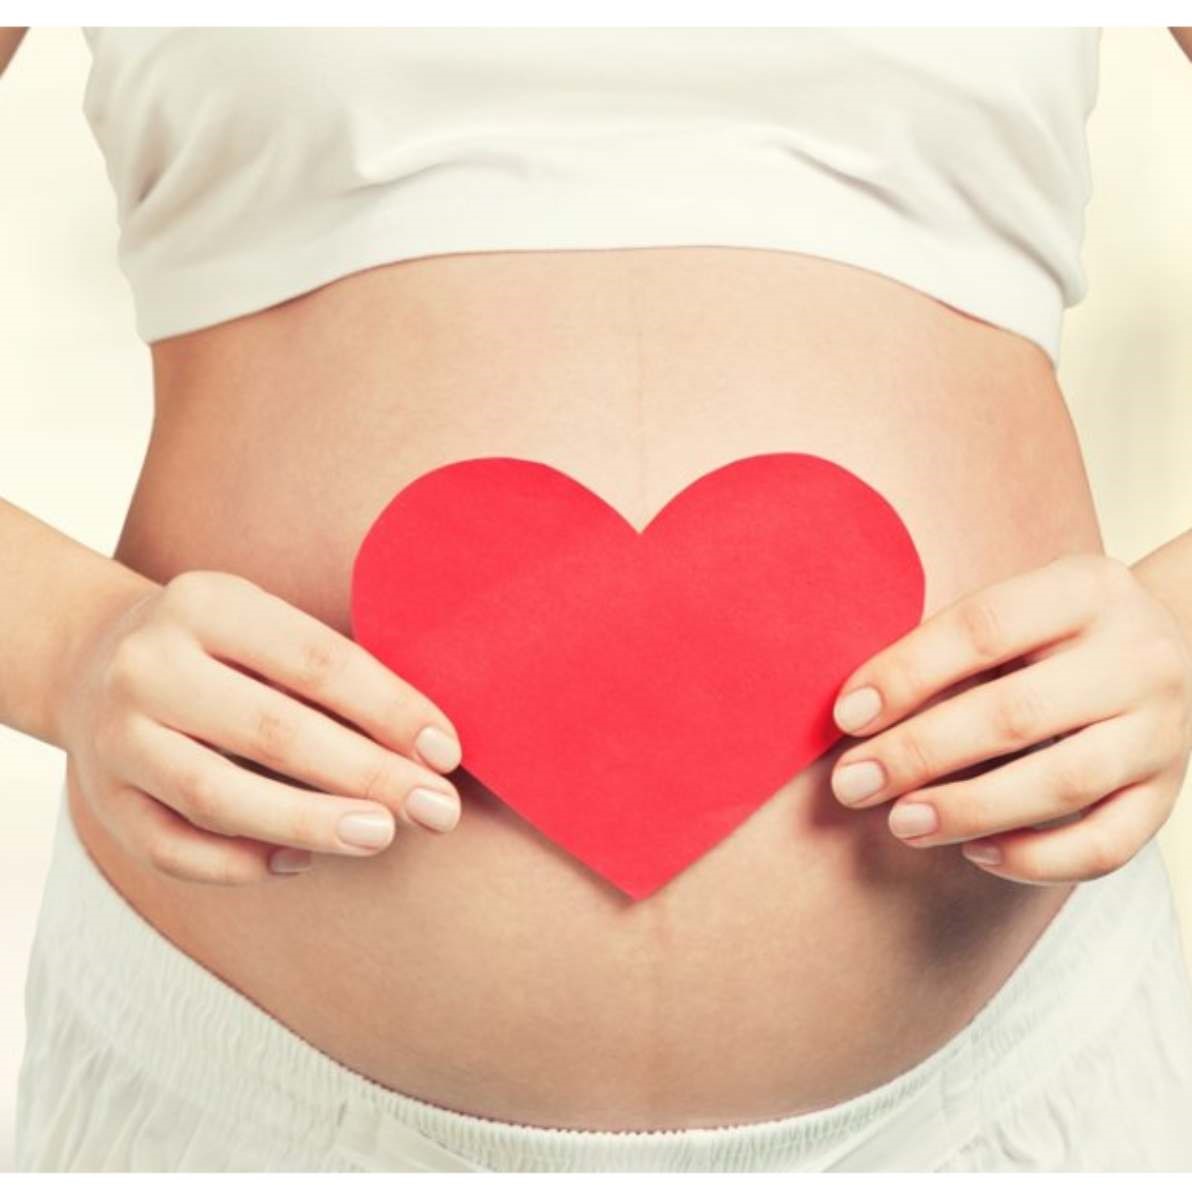 تفسیر آزمایش ادرار در بارداری می تواند میزان دفع مواد غذایی و یا عوامل رشد دیگر جنین را تا حدودی تعیین کند